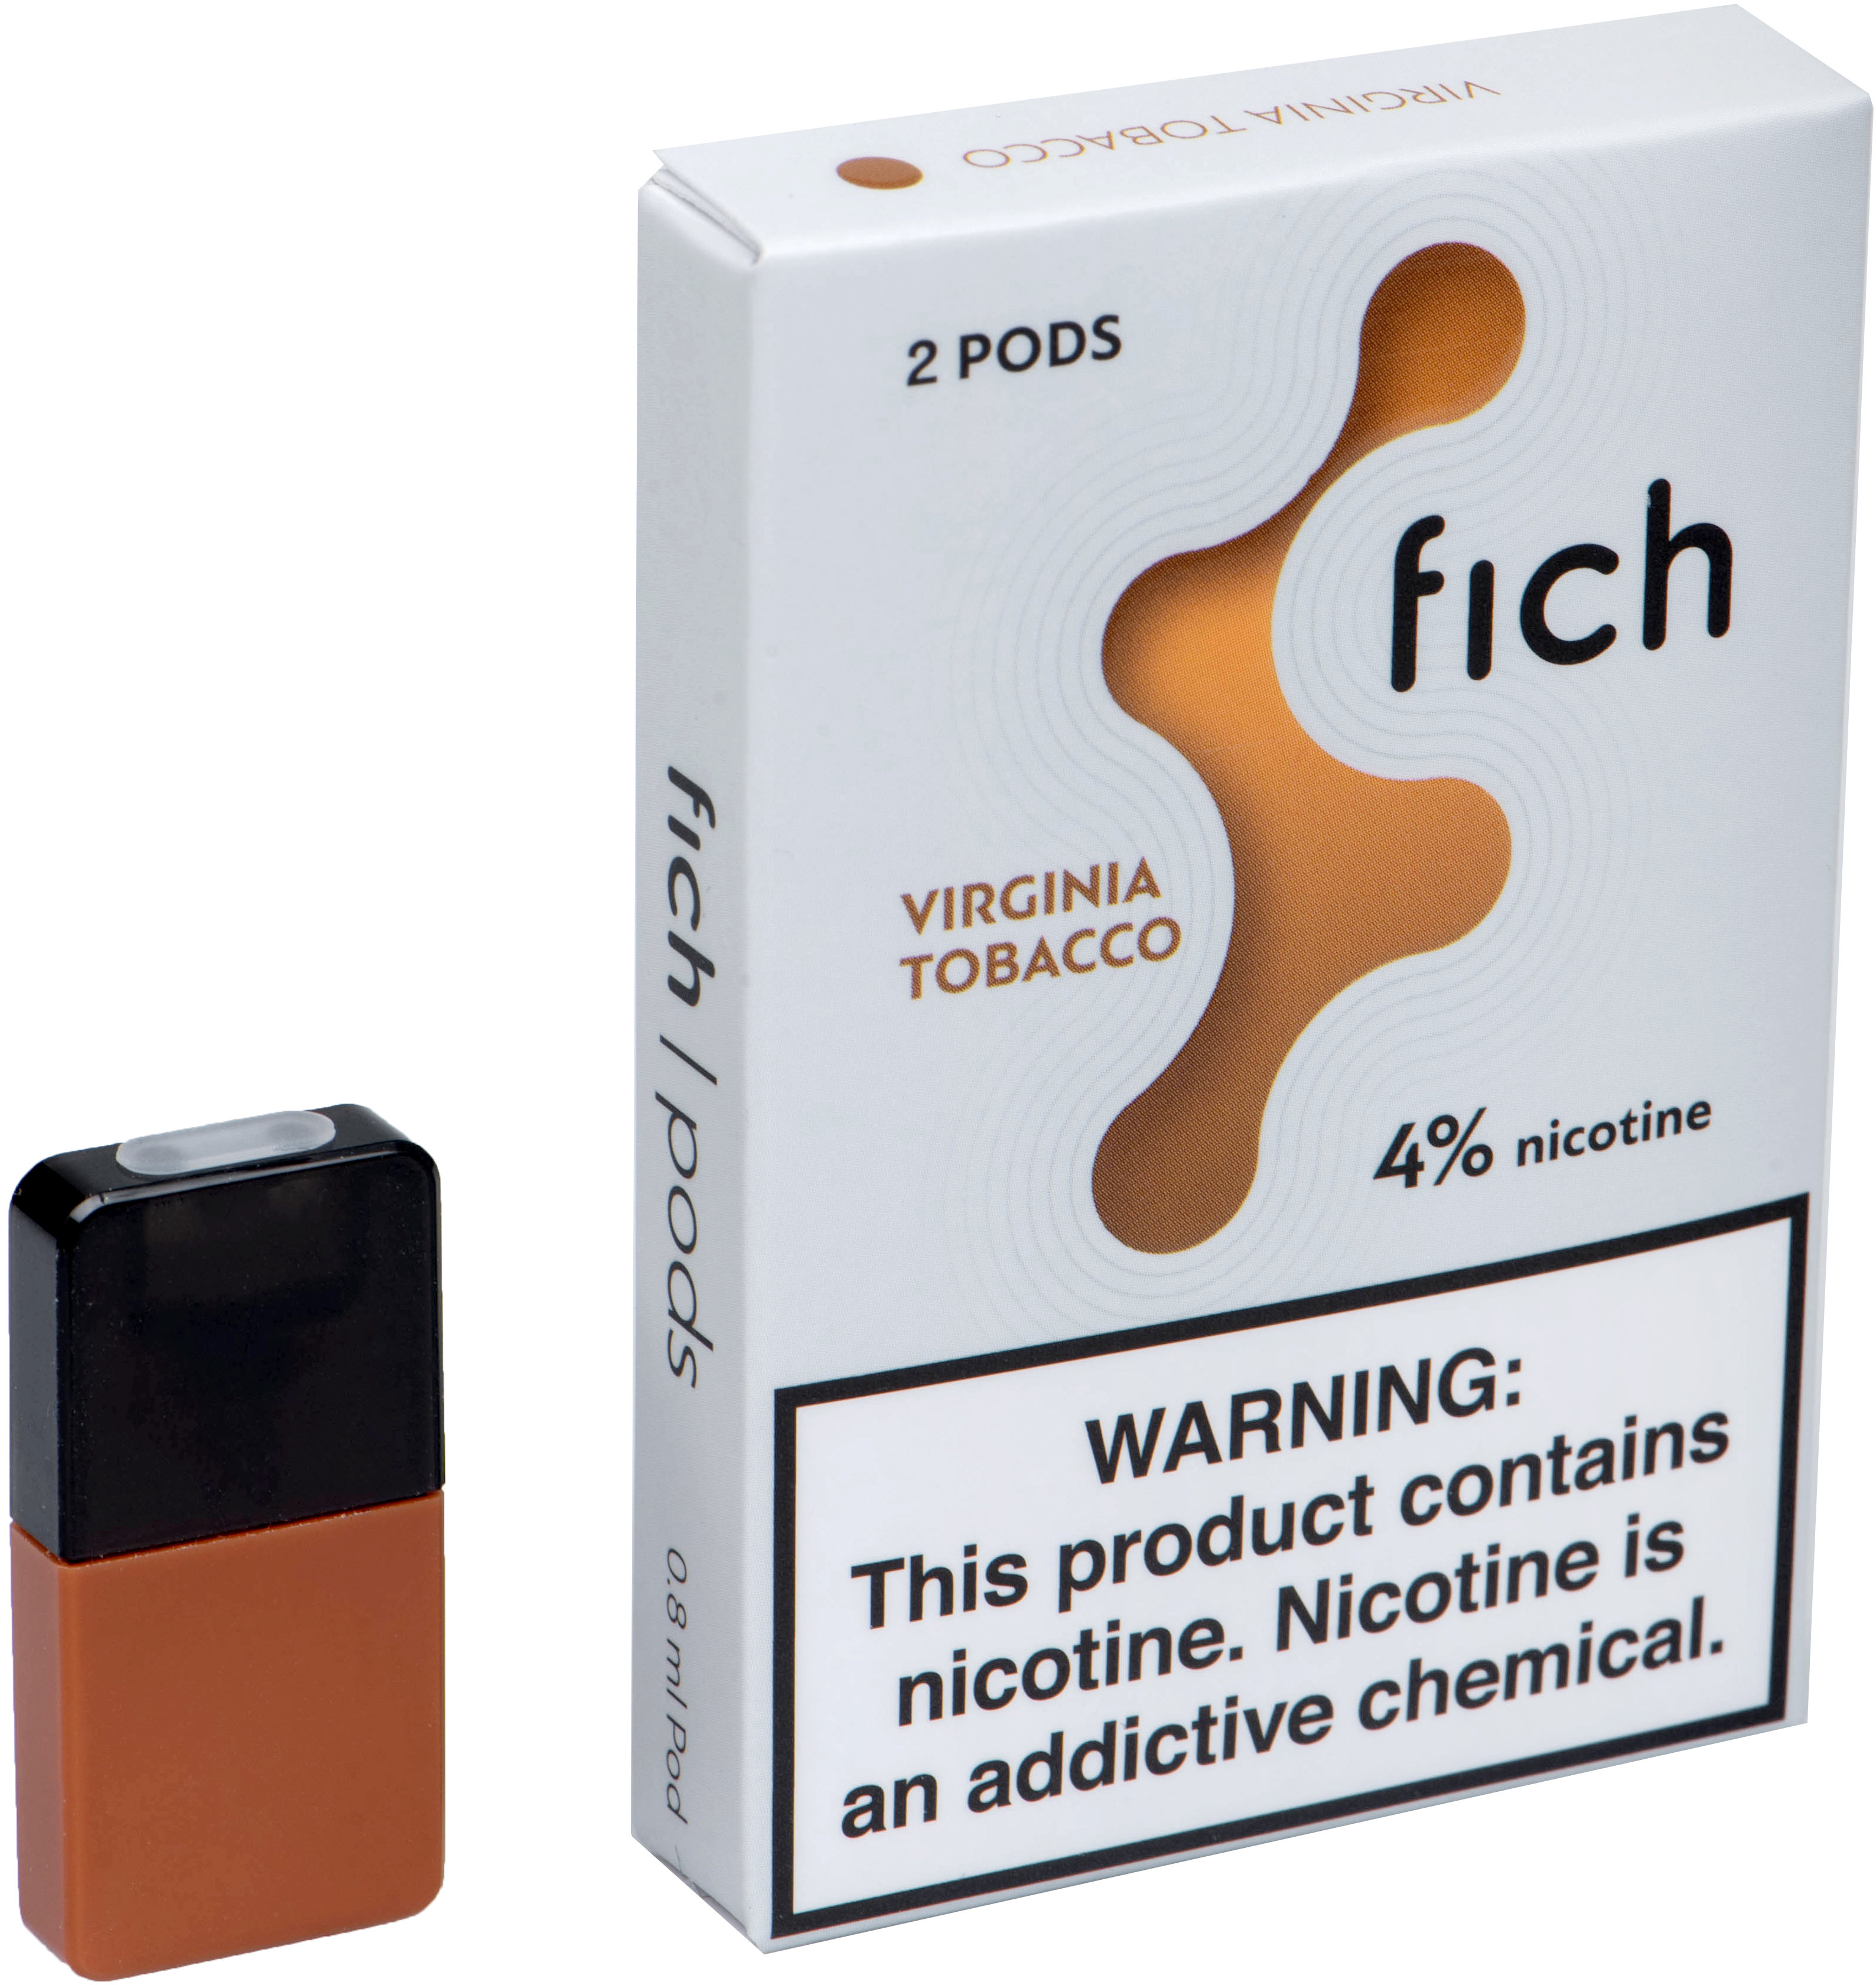 

Картриджи Fich Pods Virginia Tobacco 4% 2 шт. для POD-системы Fich